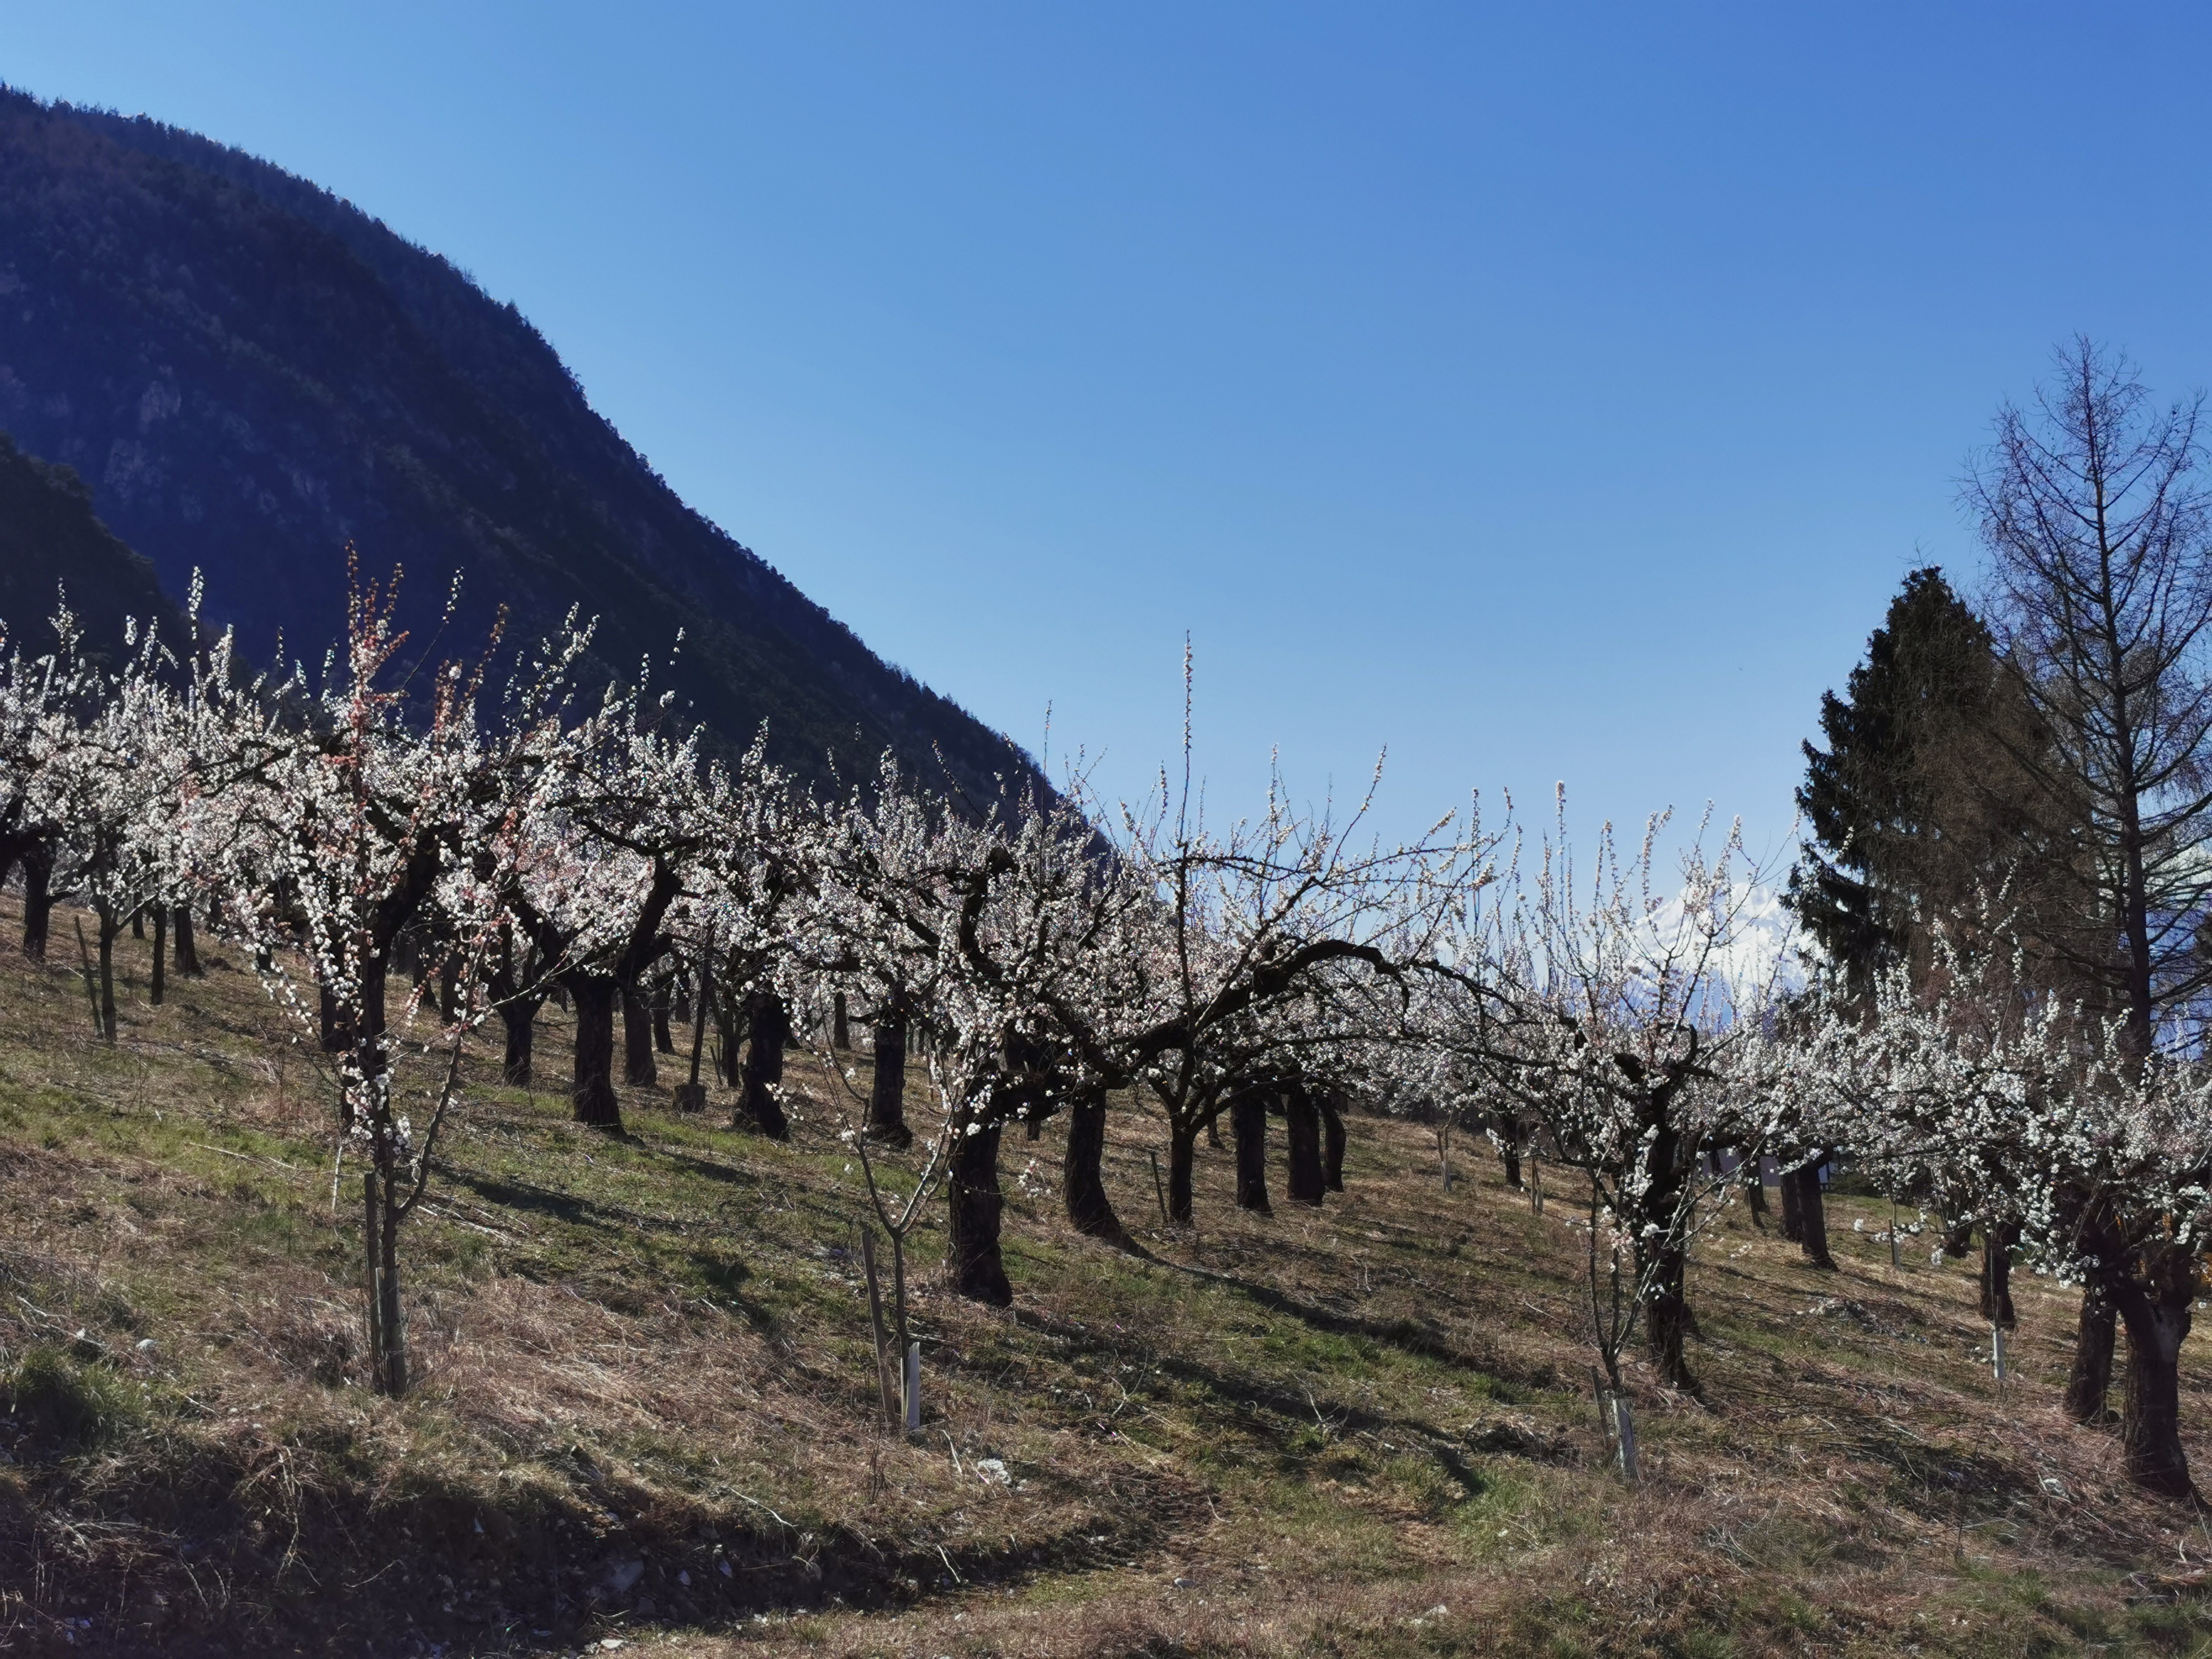 © Les abricotiers en Valais, ce jeudi 26 mars 2020 - © AGIR